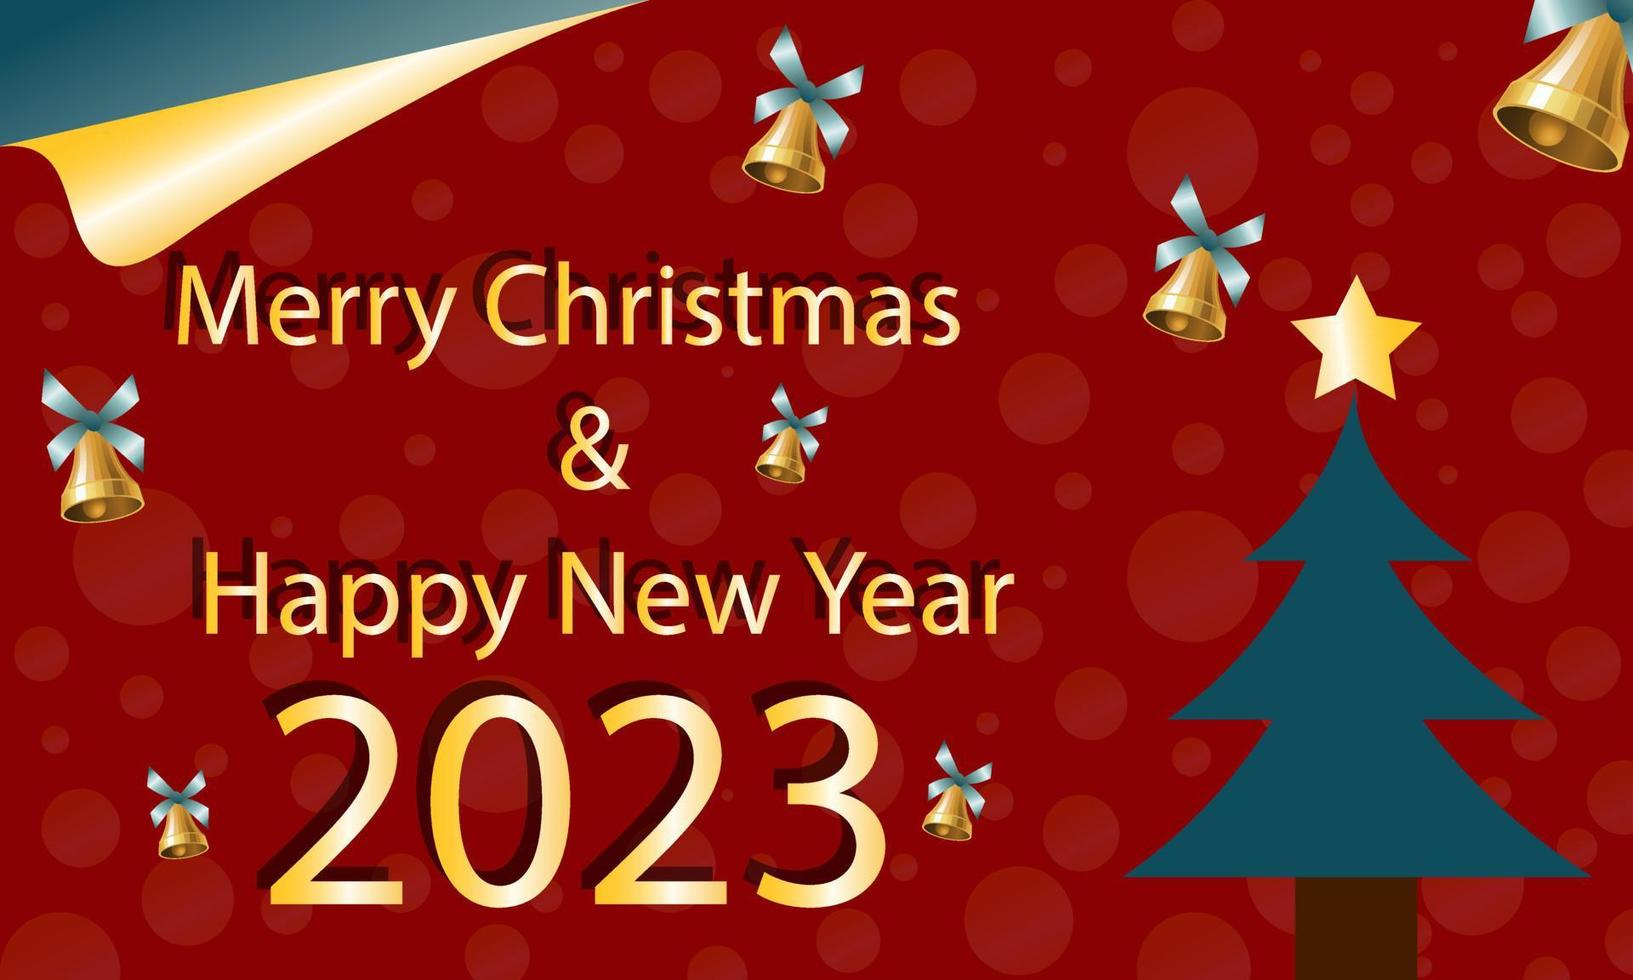 celebrando feliz navidad y año nuevo 2023 imágenes de fondo que se pueden usar para tarjetas de felicitación y fondos de pantalla. imagen de stock de ilustración Vector en Vecteezy